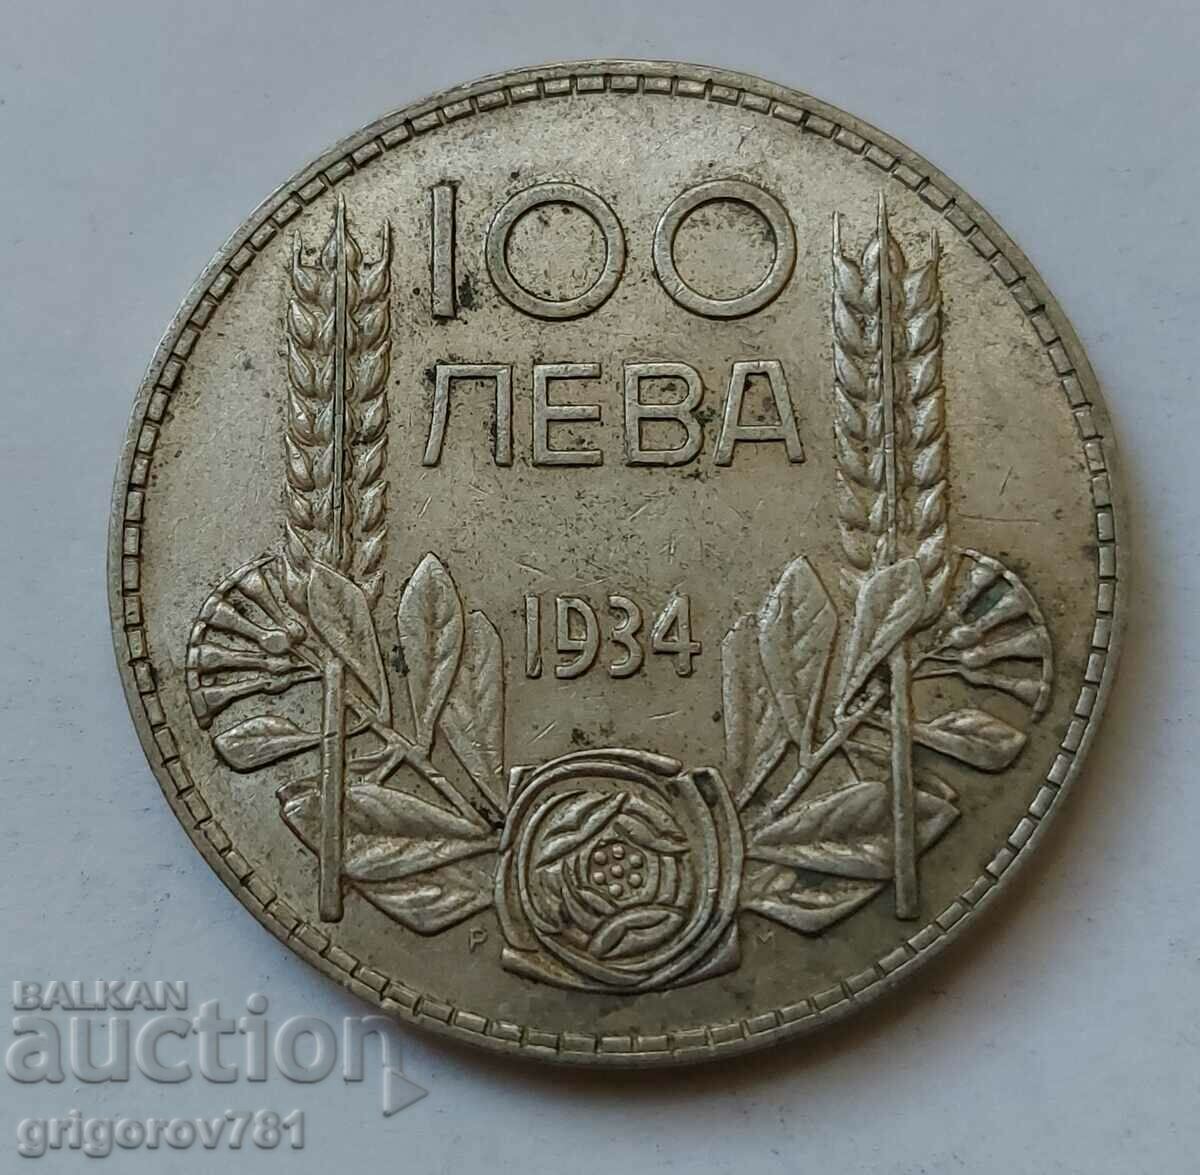 100 leva silver Bulgaria 1934 - silver coin #121